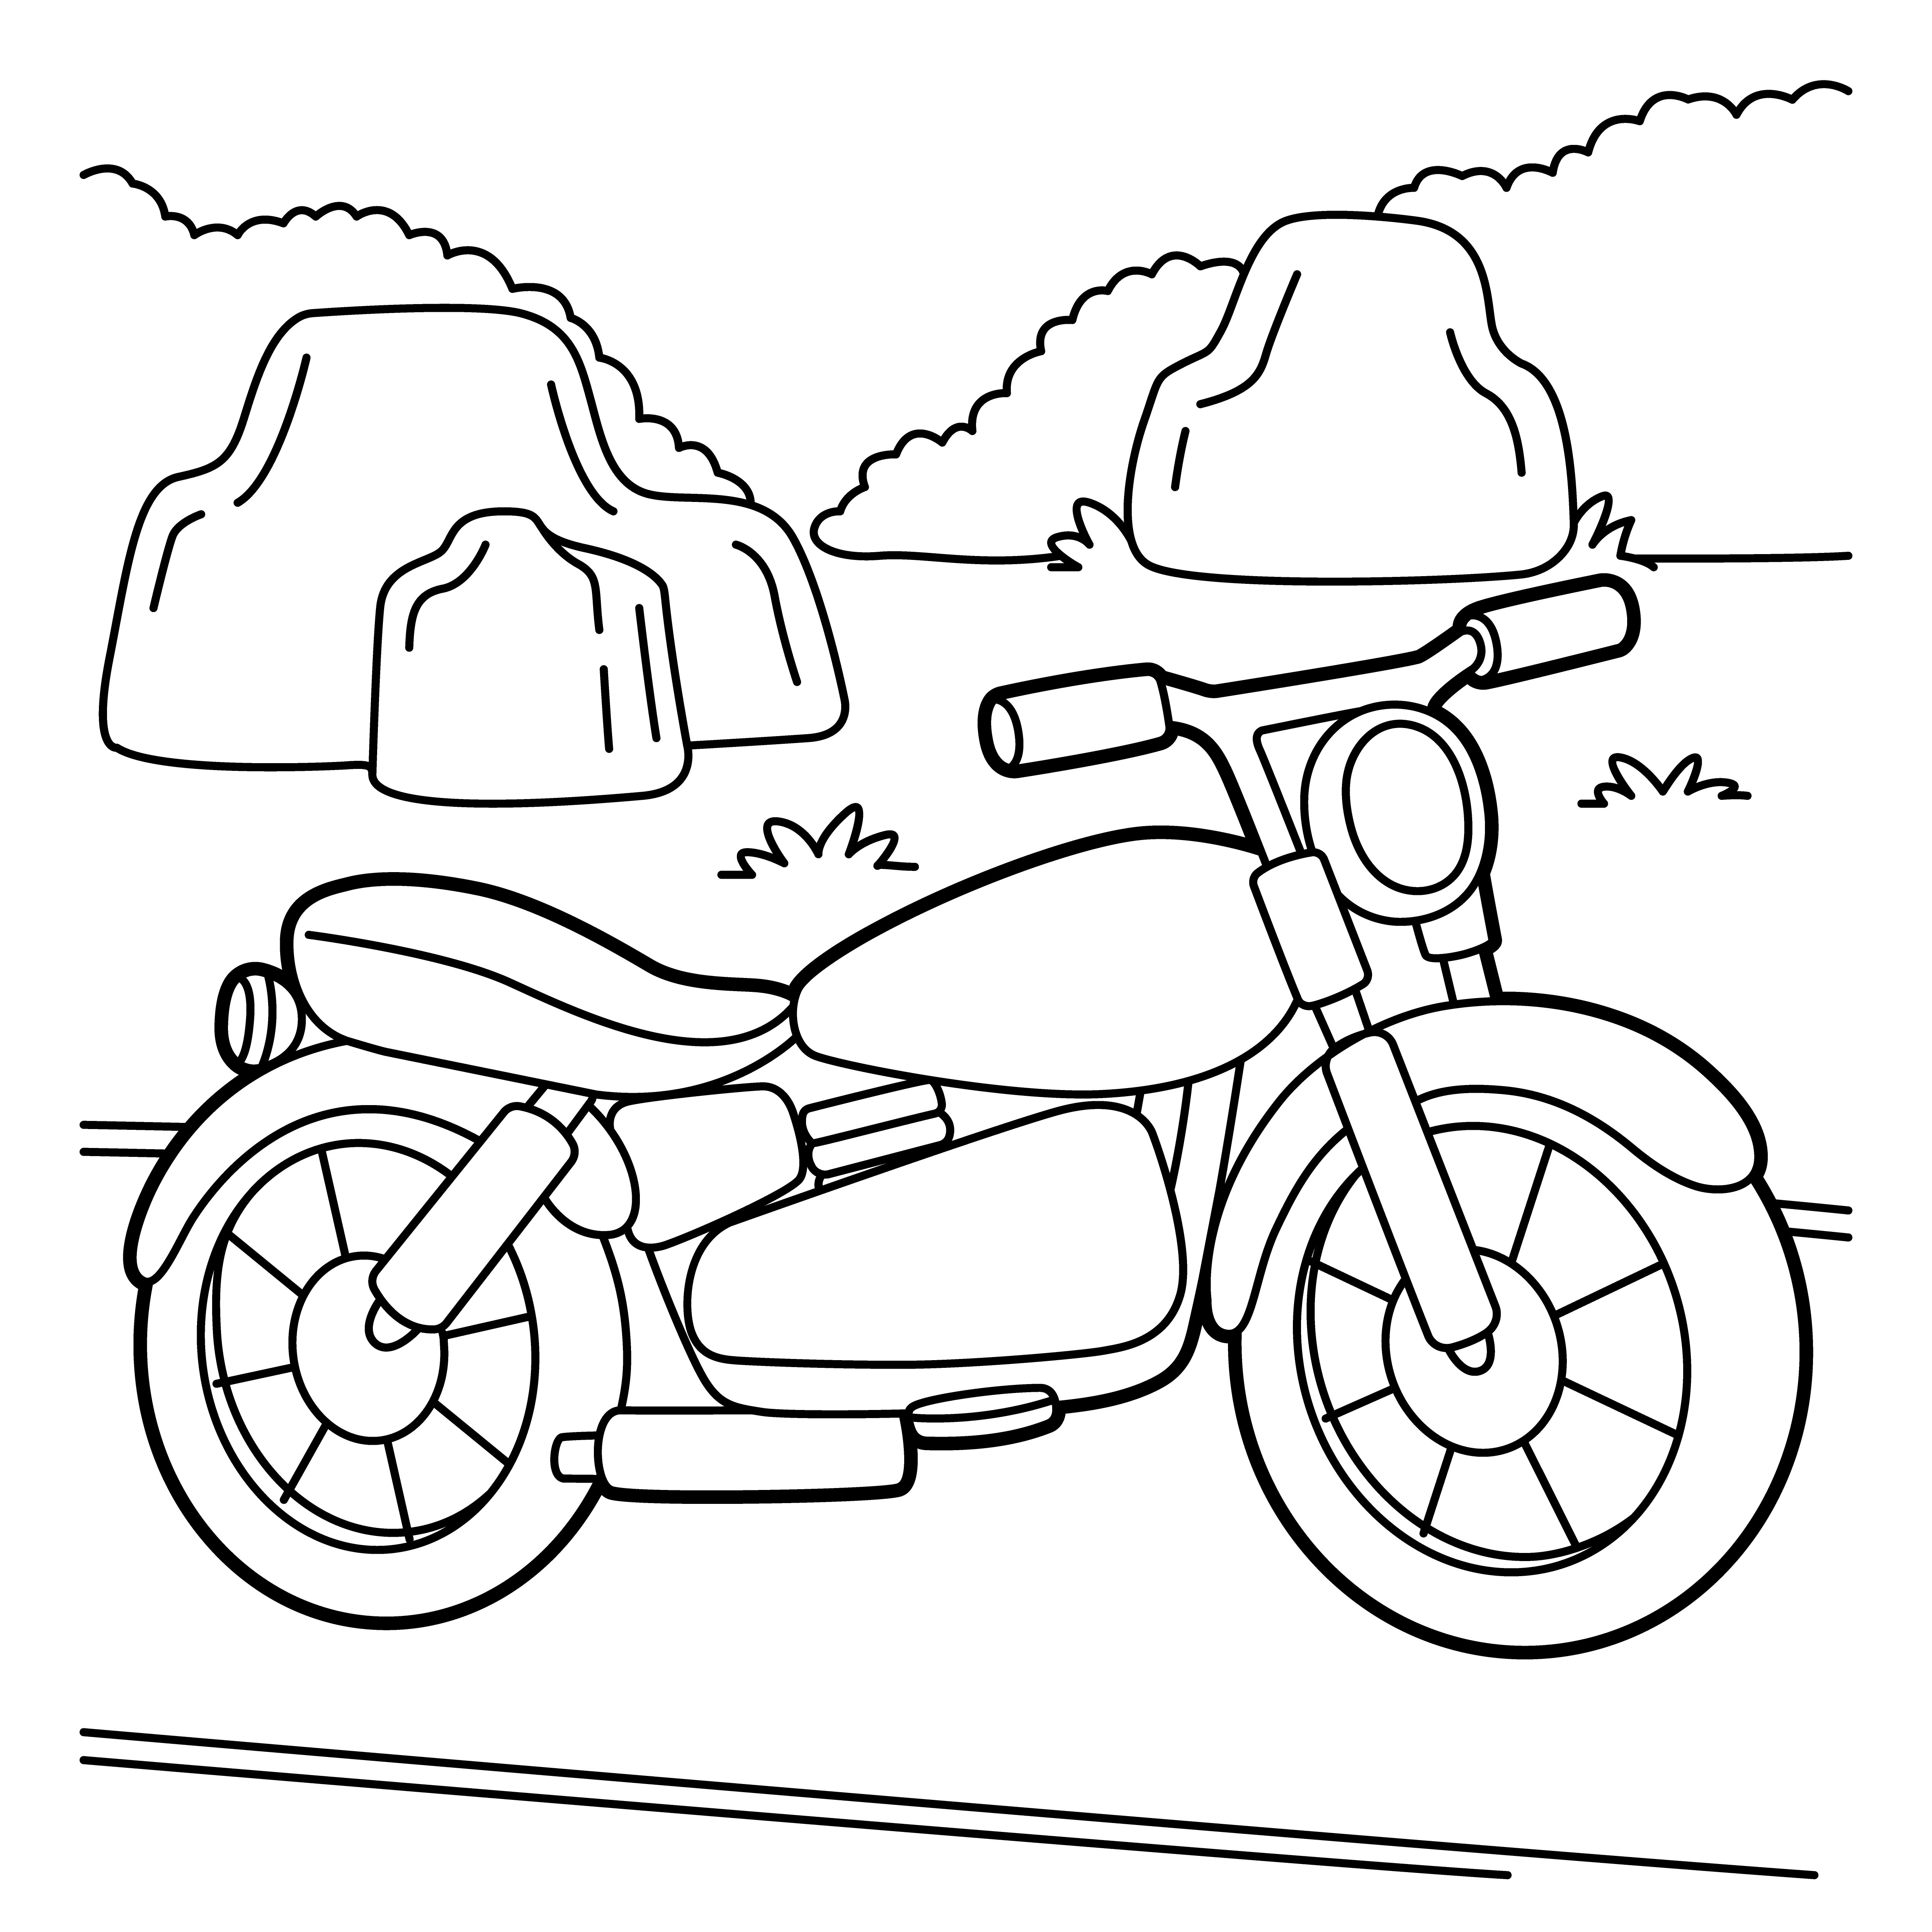 Раскраска мотоцикл «Бездорожная воля» формата А4 в высоком качестве